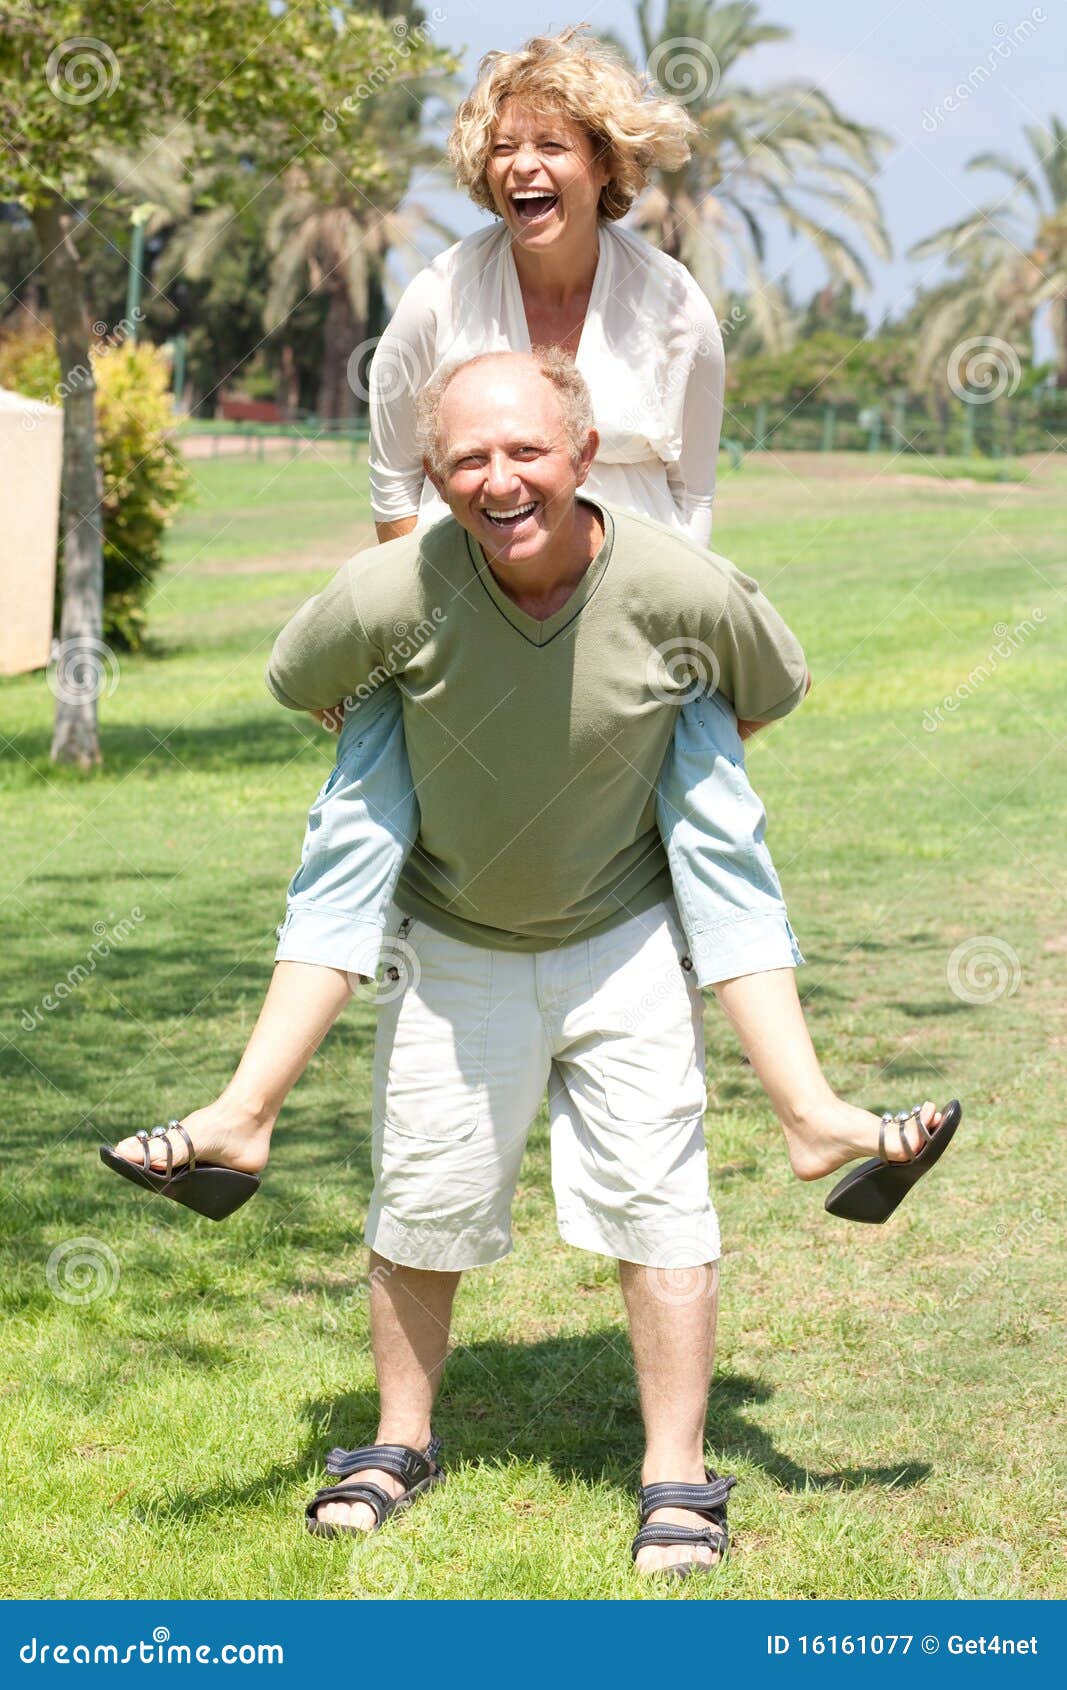 image of senior man giving woman piggyback ride